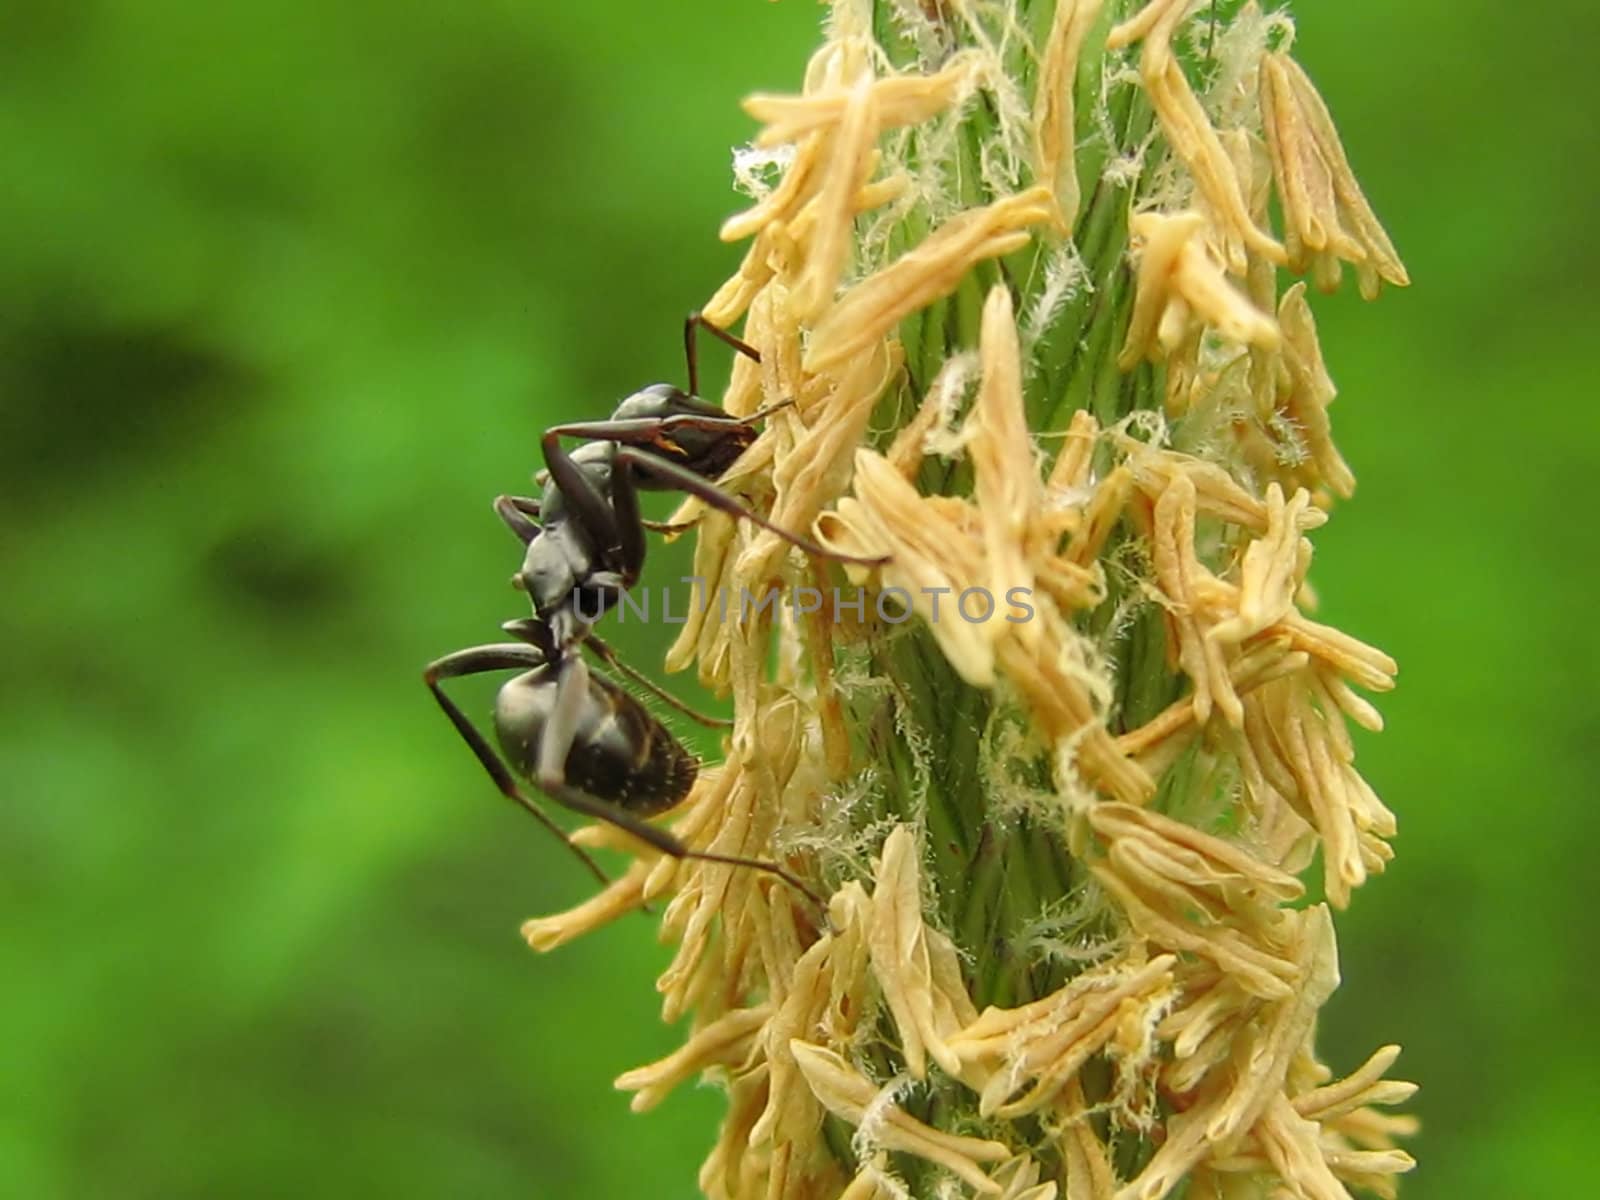 Ant On Flowering Weed by llyr8